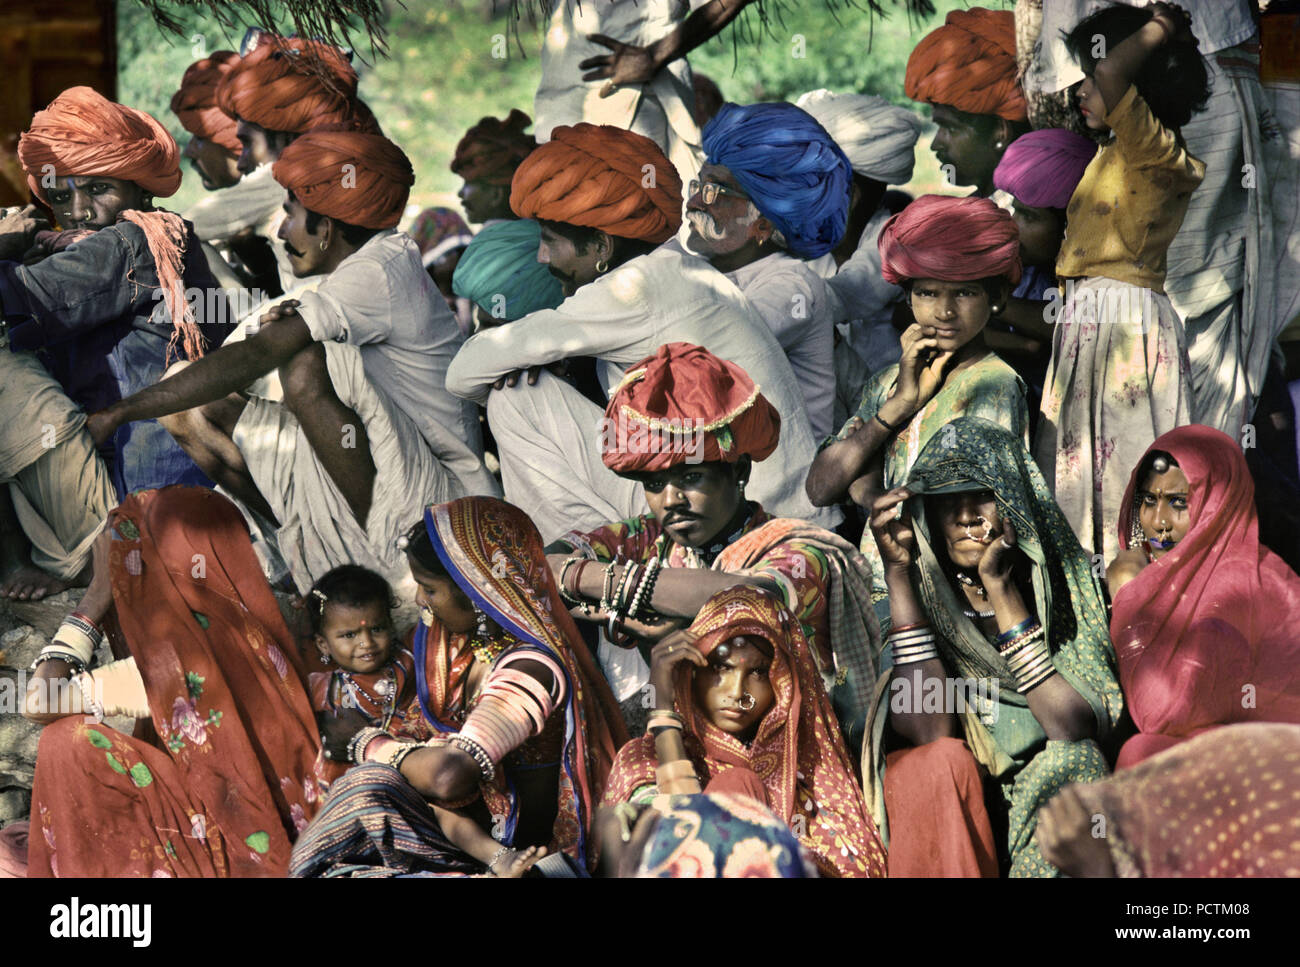 Fête du village, groupe de gens colorés à Jaisalmer, Rajasthan, Inde, Asie Banque D'Images